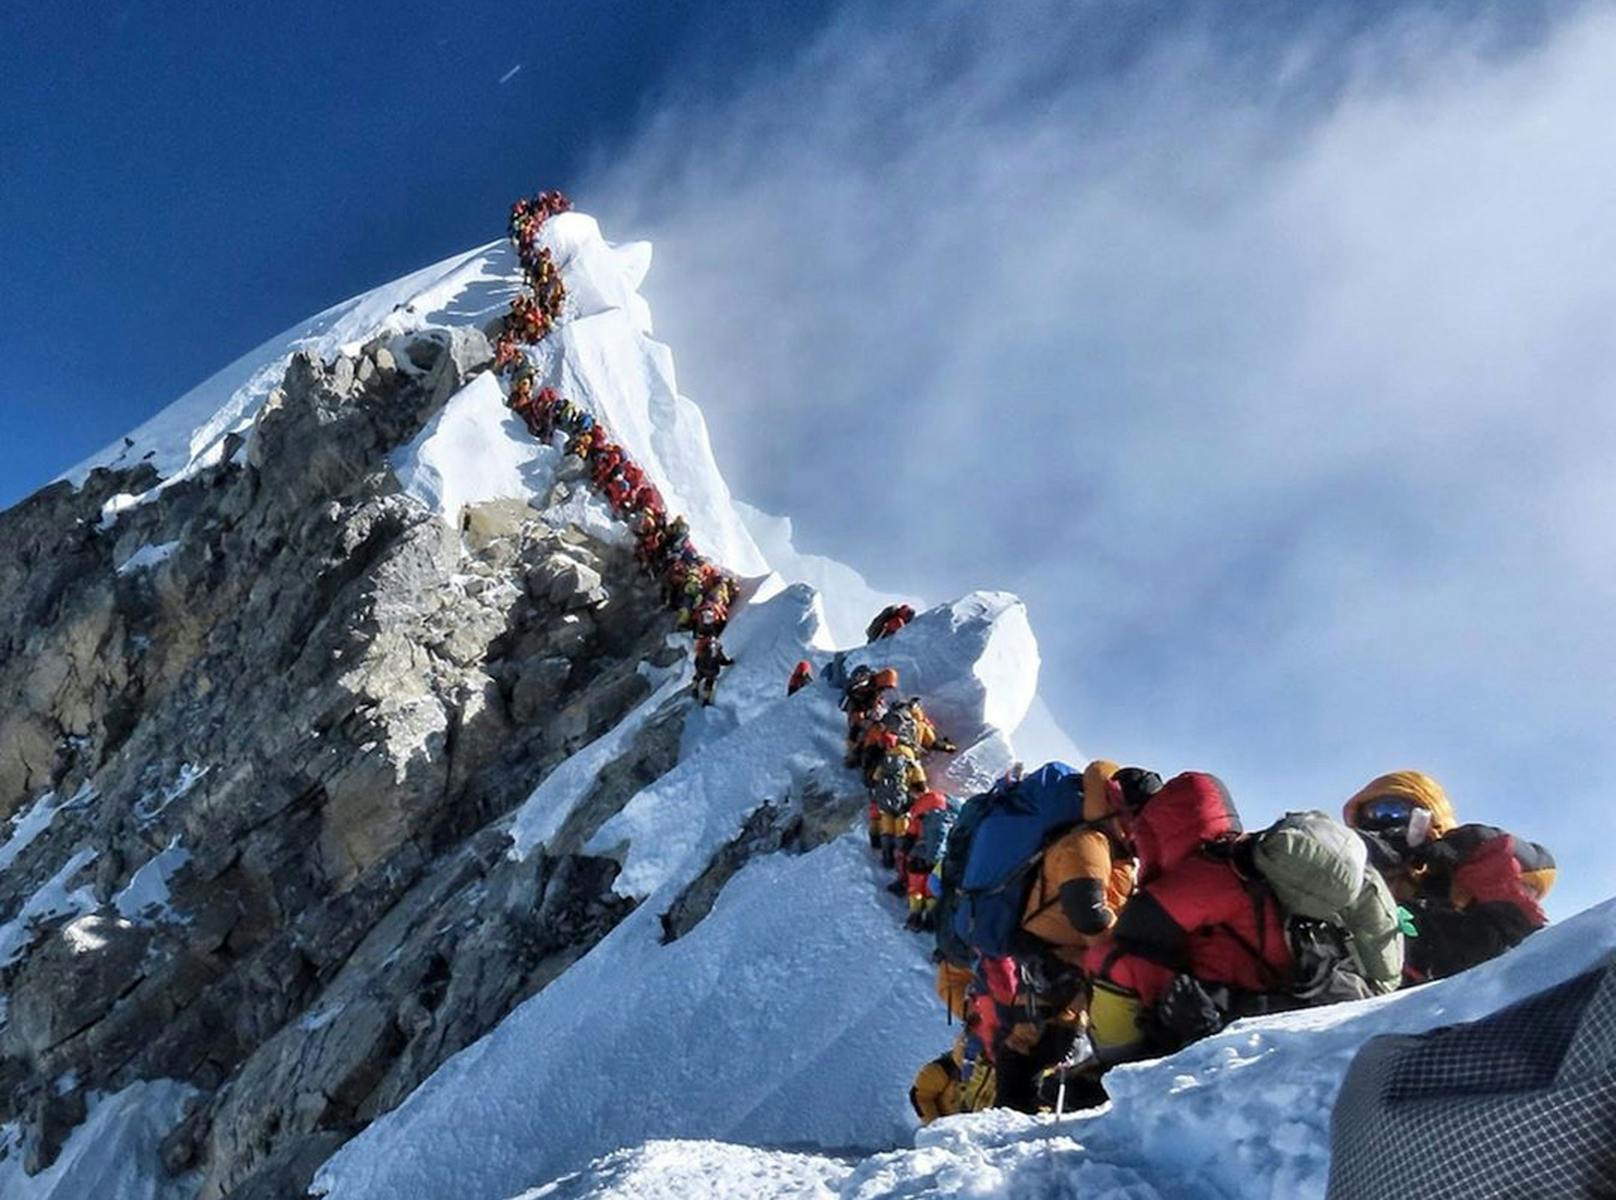 Stau in der Todeszone des Mount Everest: Das Bild ging 2019 um die Welt. Jetzt wollen noch mehr Leute auf den Gipfel.